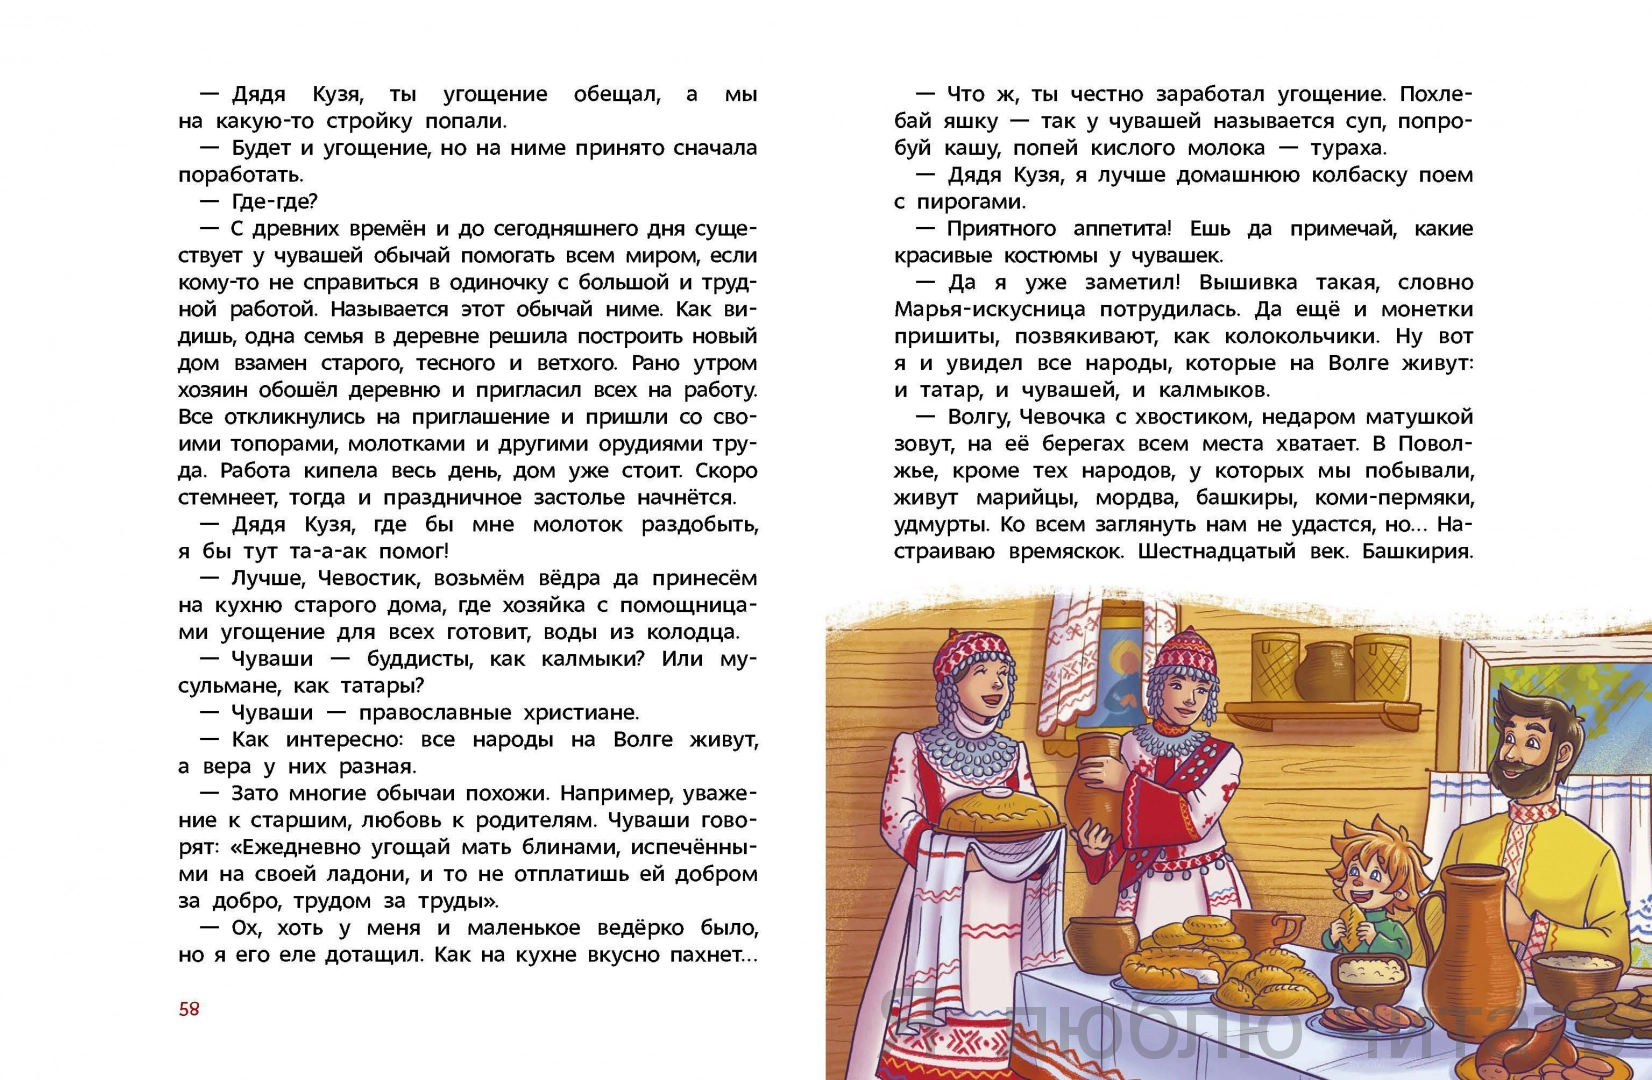 Сценарий праздника «Культурное наследие народов России!»